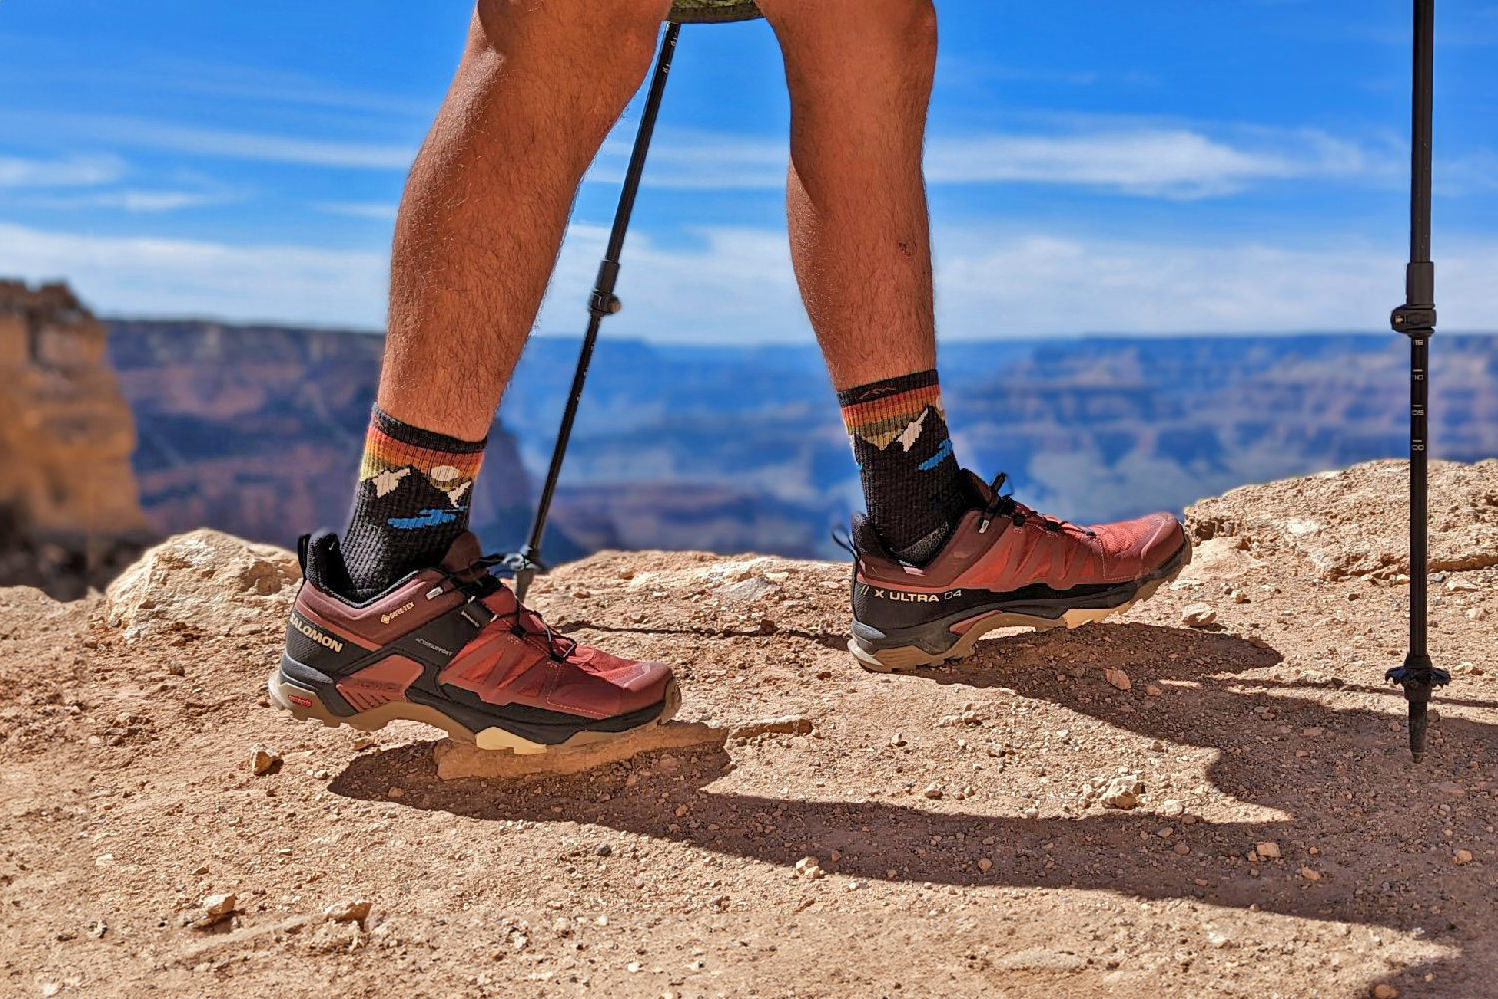 Do Toe Socks Really Prevent Blisters When Hiking?